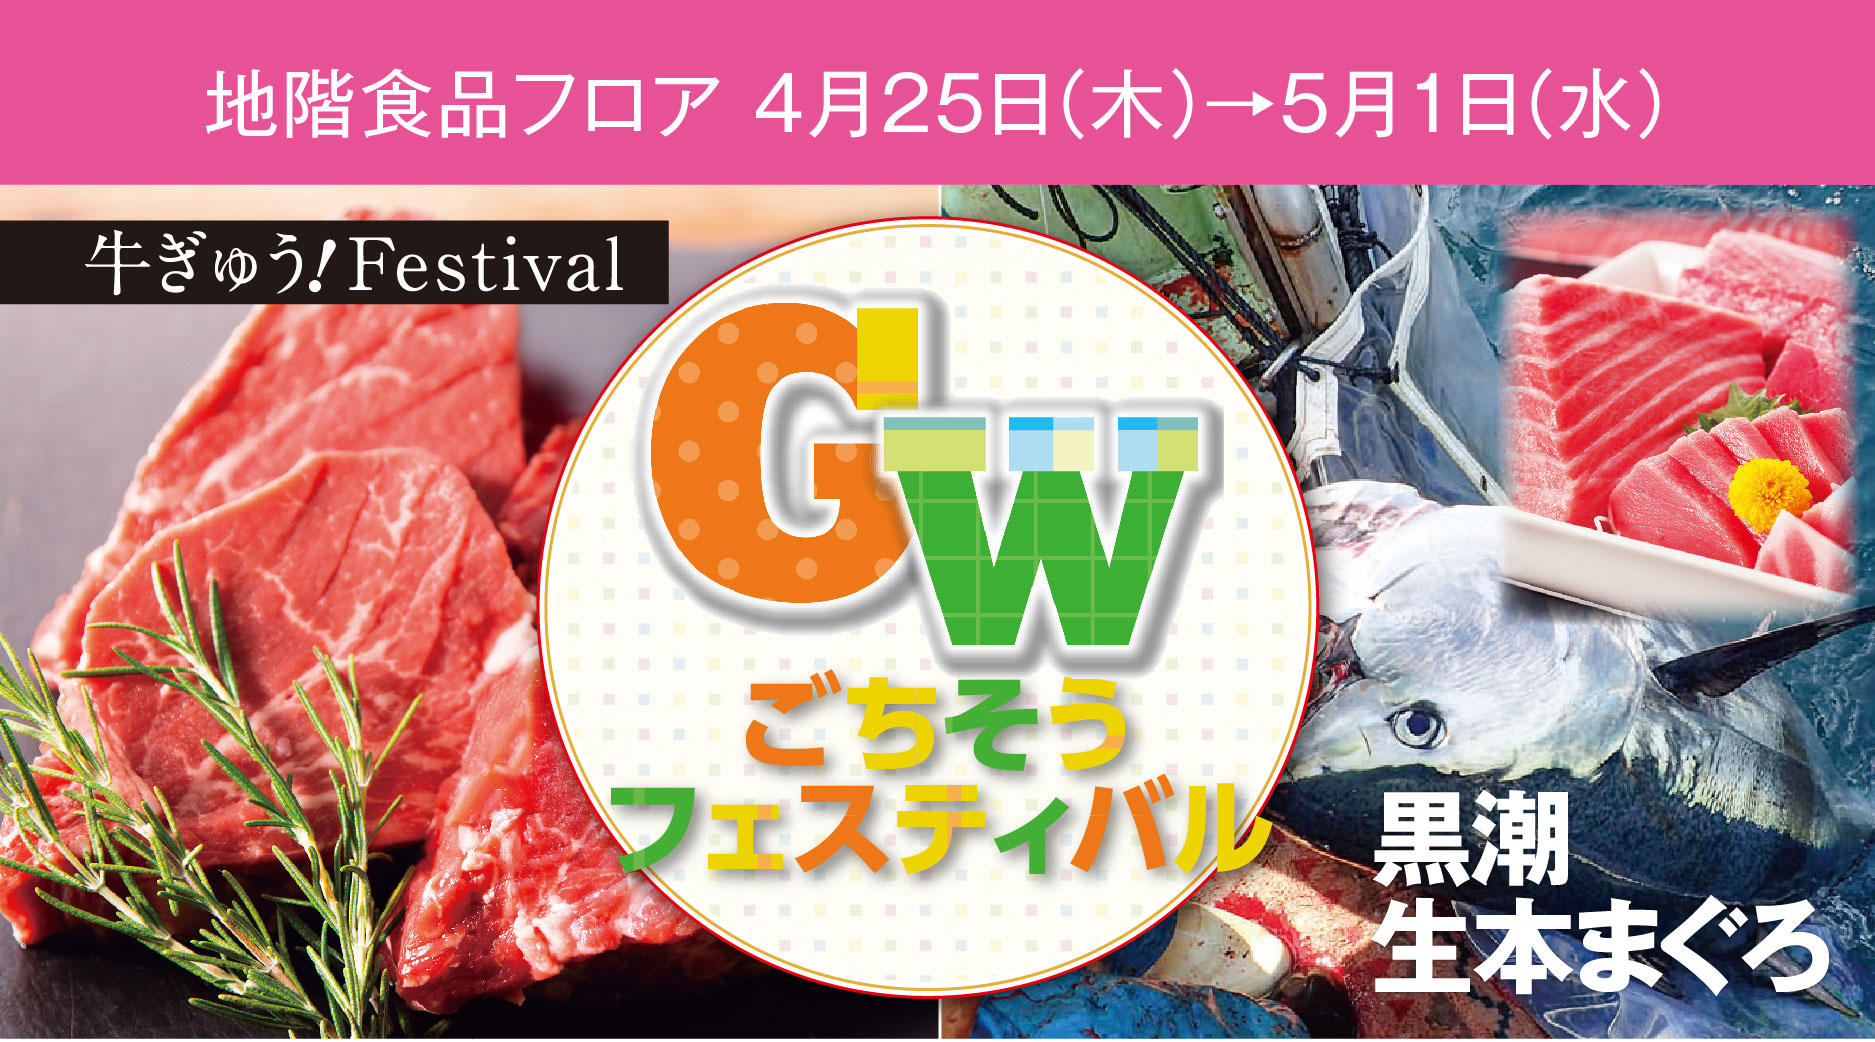 GWごちそうフェスティバル